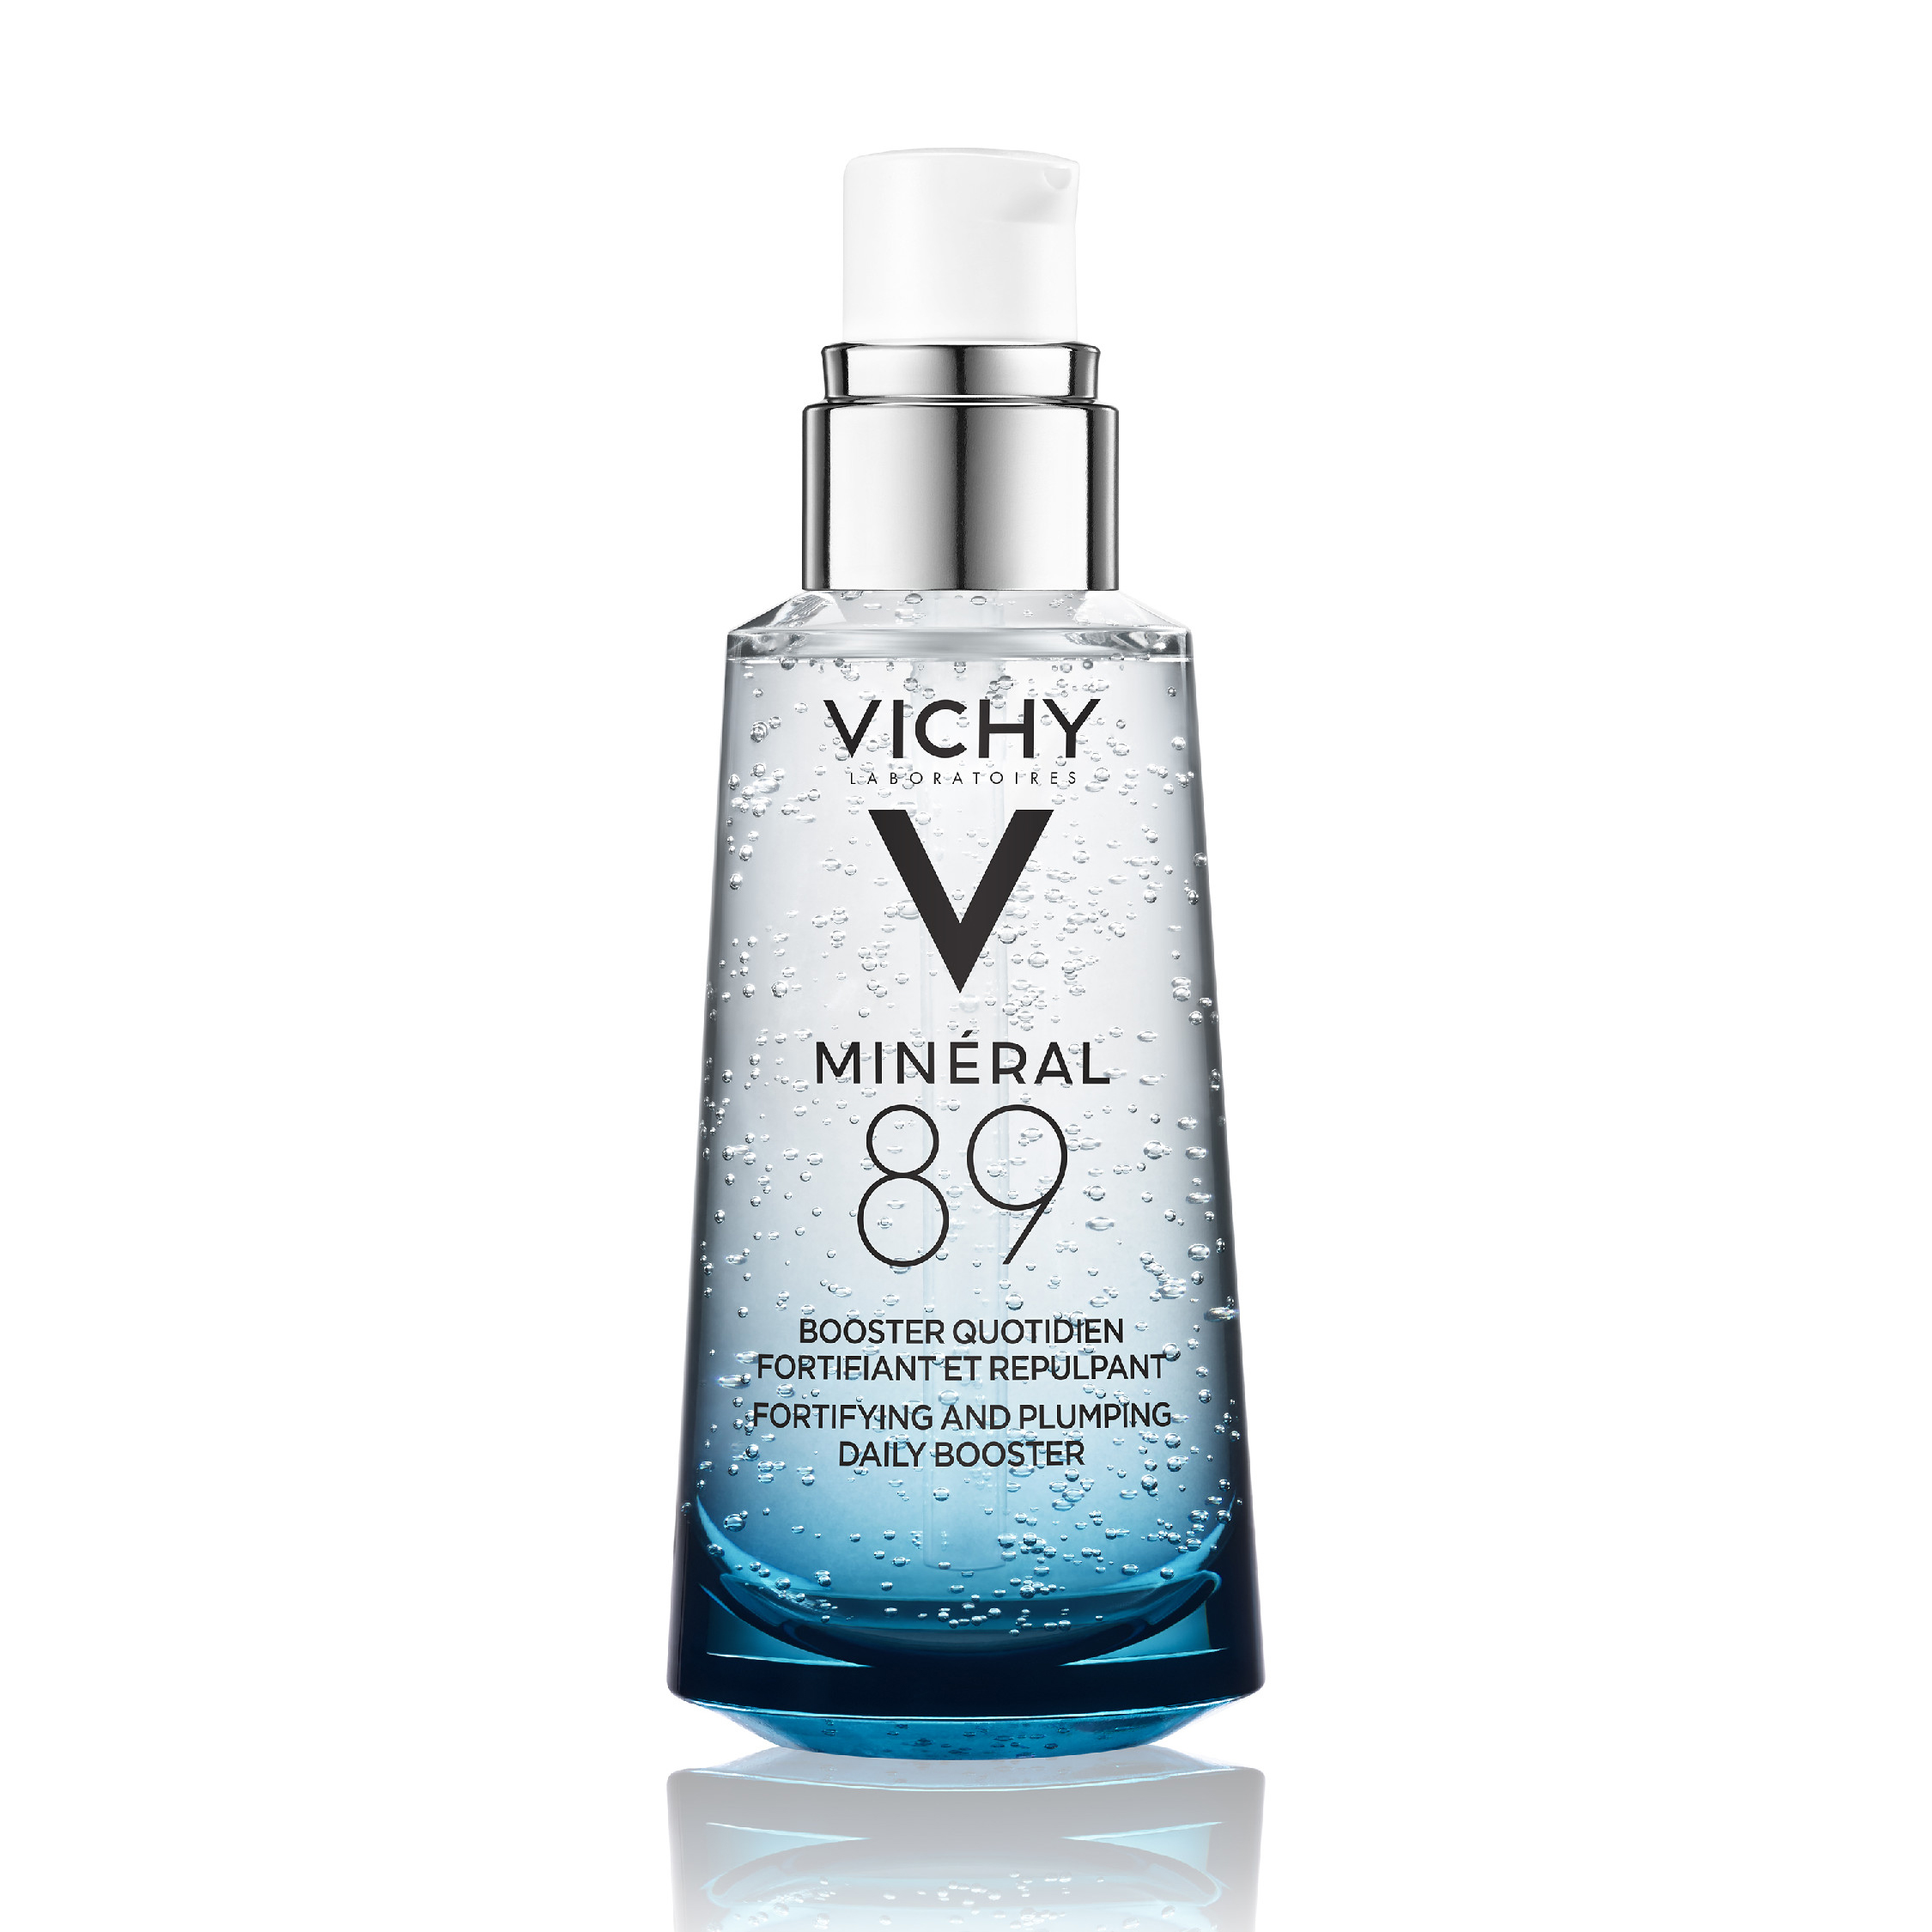 โปรโมชั่น VICHY Mineral 89 Serum Daily Booster 50 ml./ วิชี่ มิเนอรัล 89 พรีเซรั่มน้ำแร่เข้มข้น บำรุงผิวหน้า 50 มล.